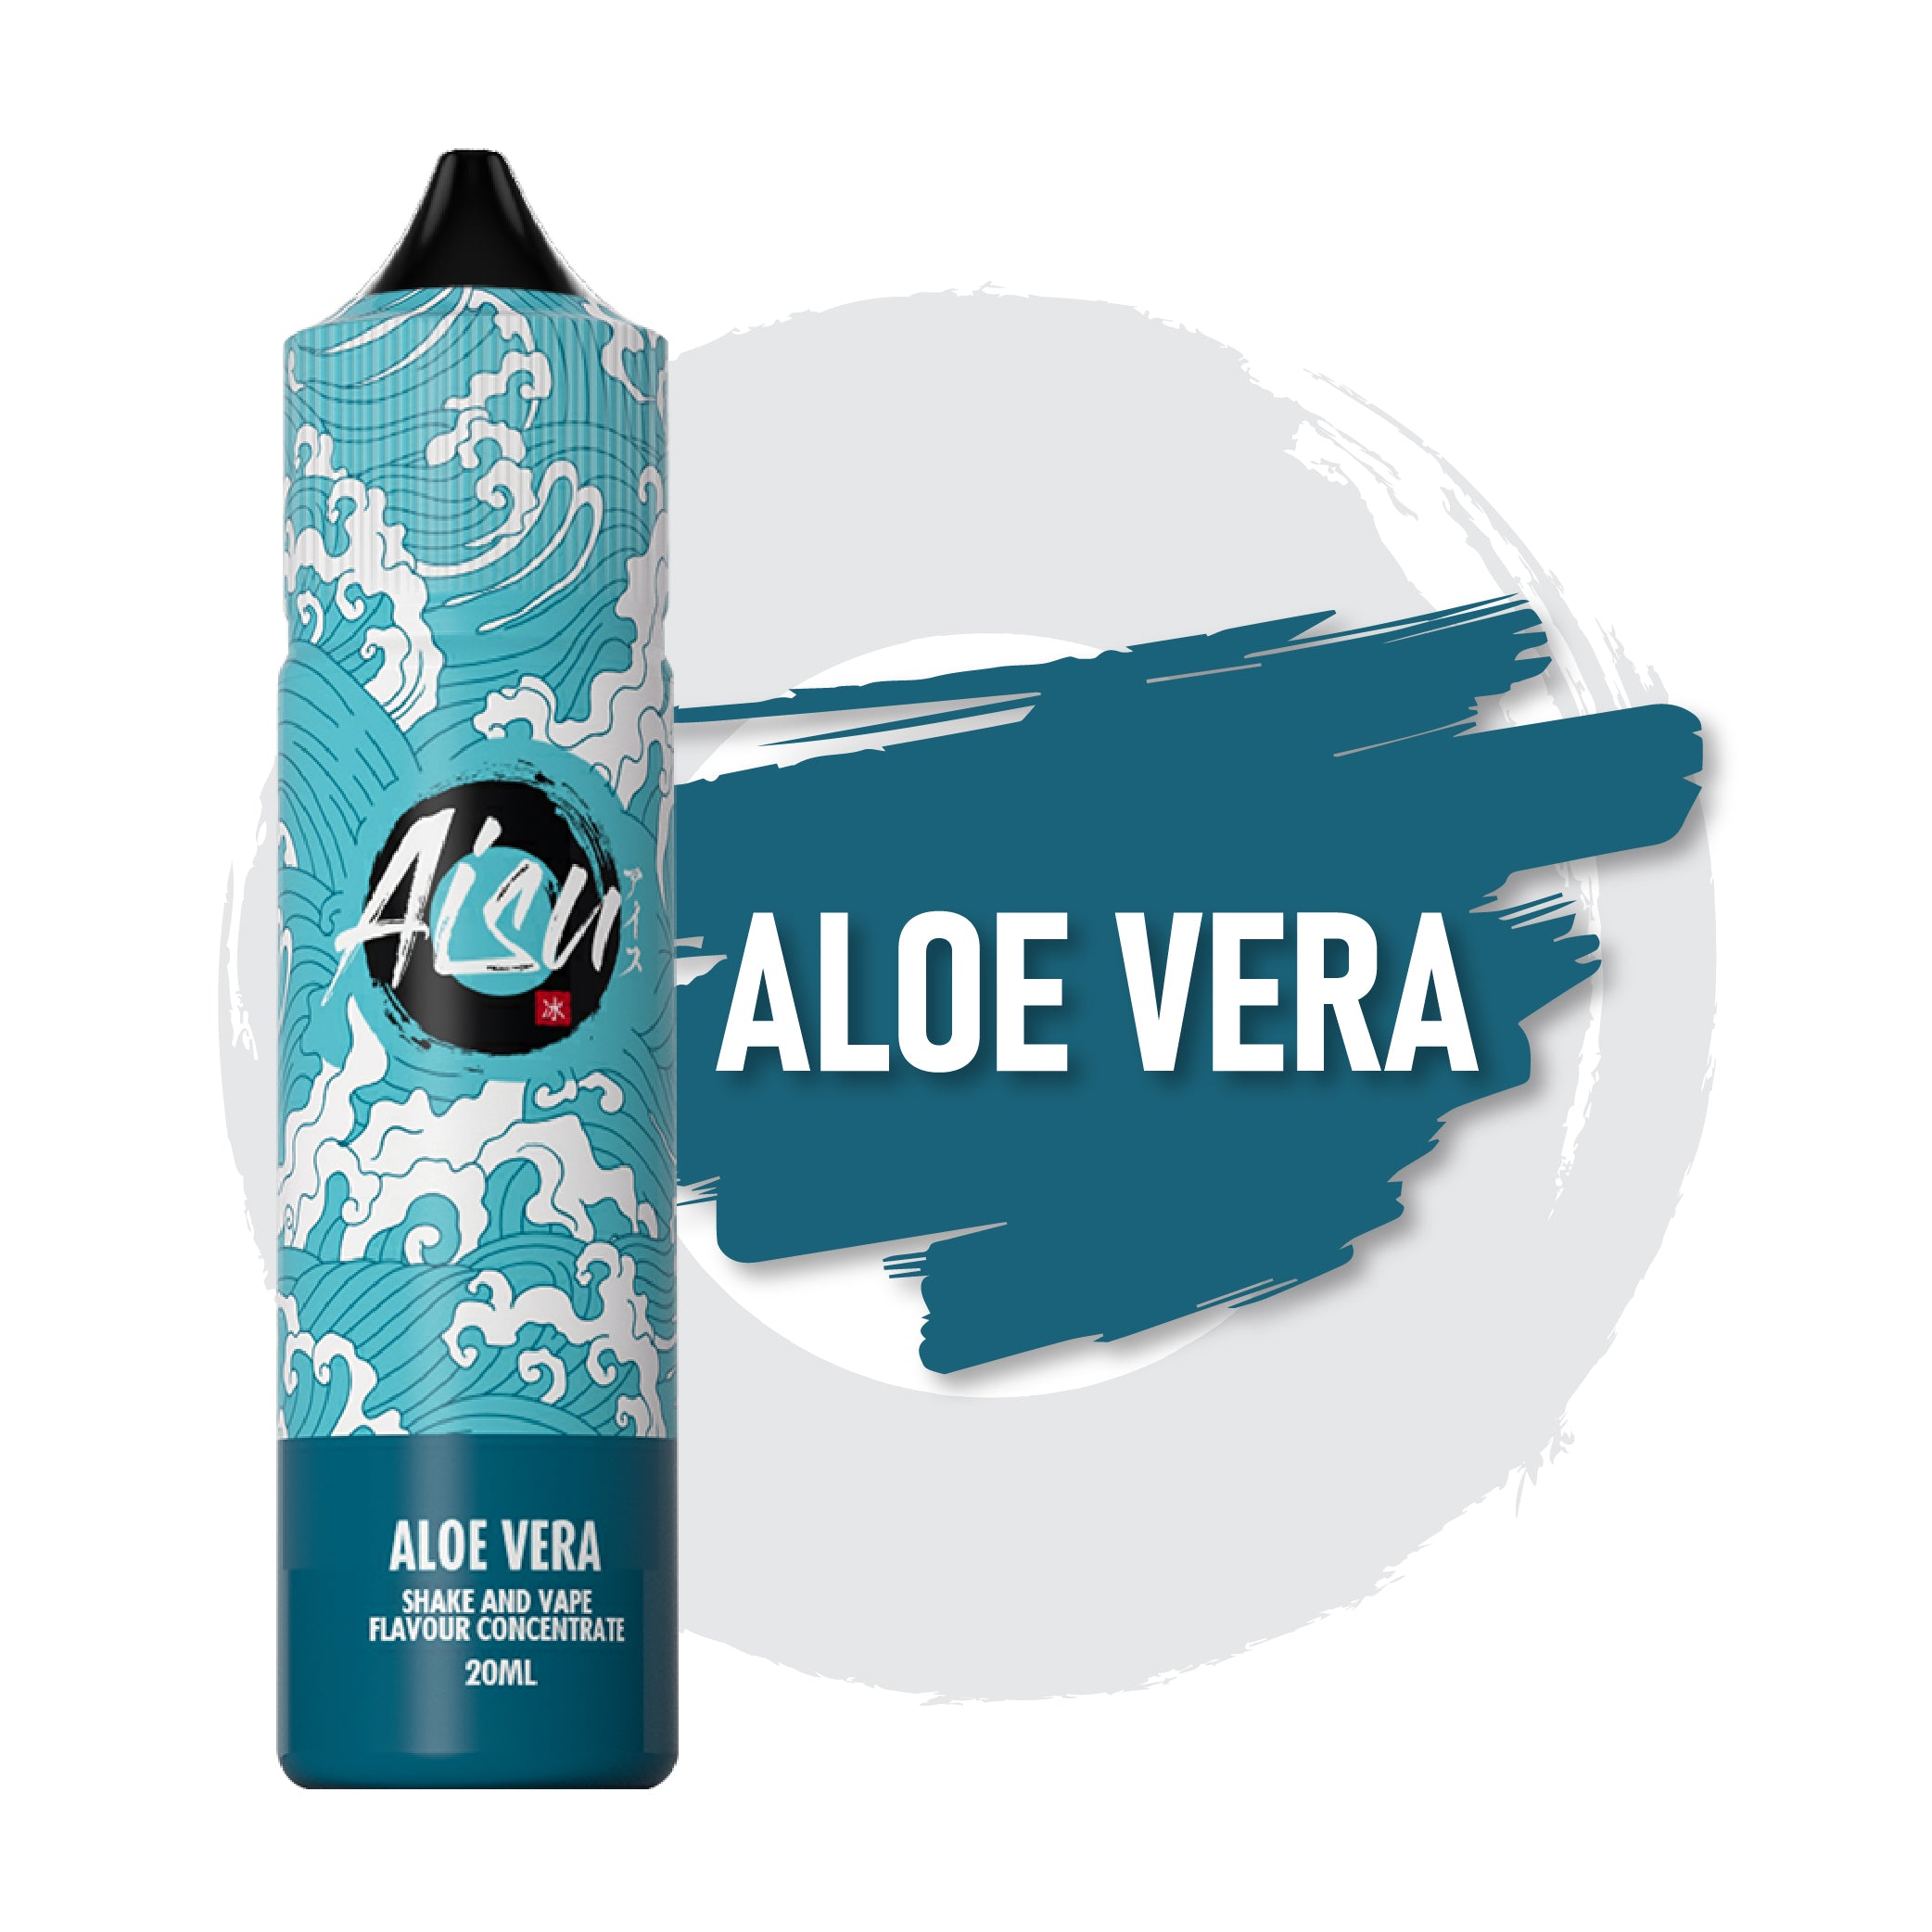 AISU Aloe Vera Shake and Vape 20ml Flavour Concentrate e-liquid bottle